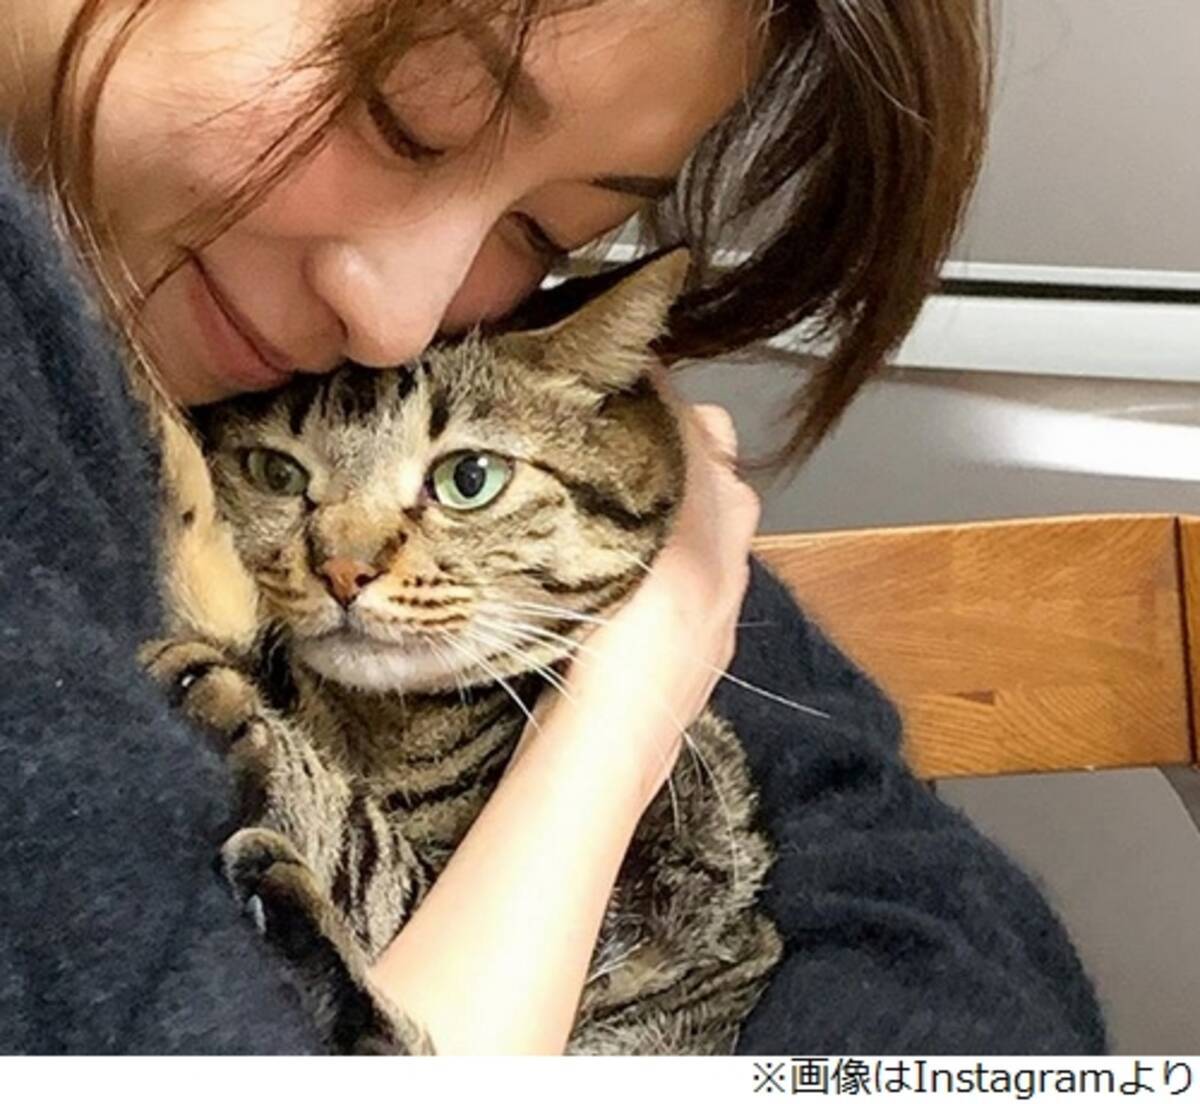 愛猫抱くカトパン 絶賛 みーちゃんになりたい人続出 年1月19日 エキサイトニュース